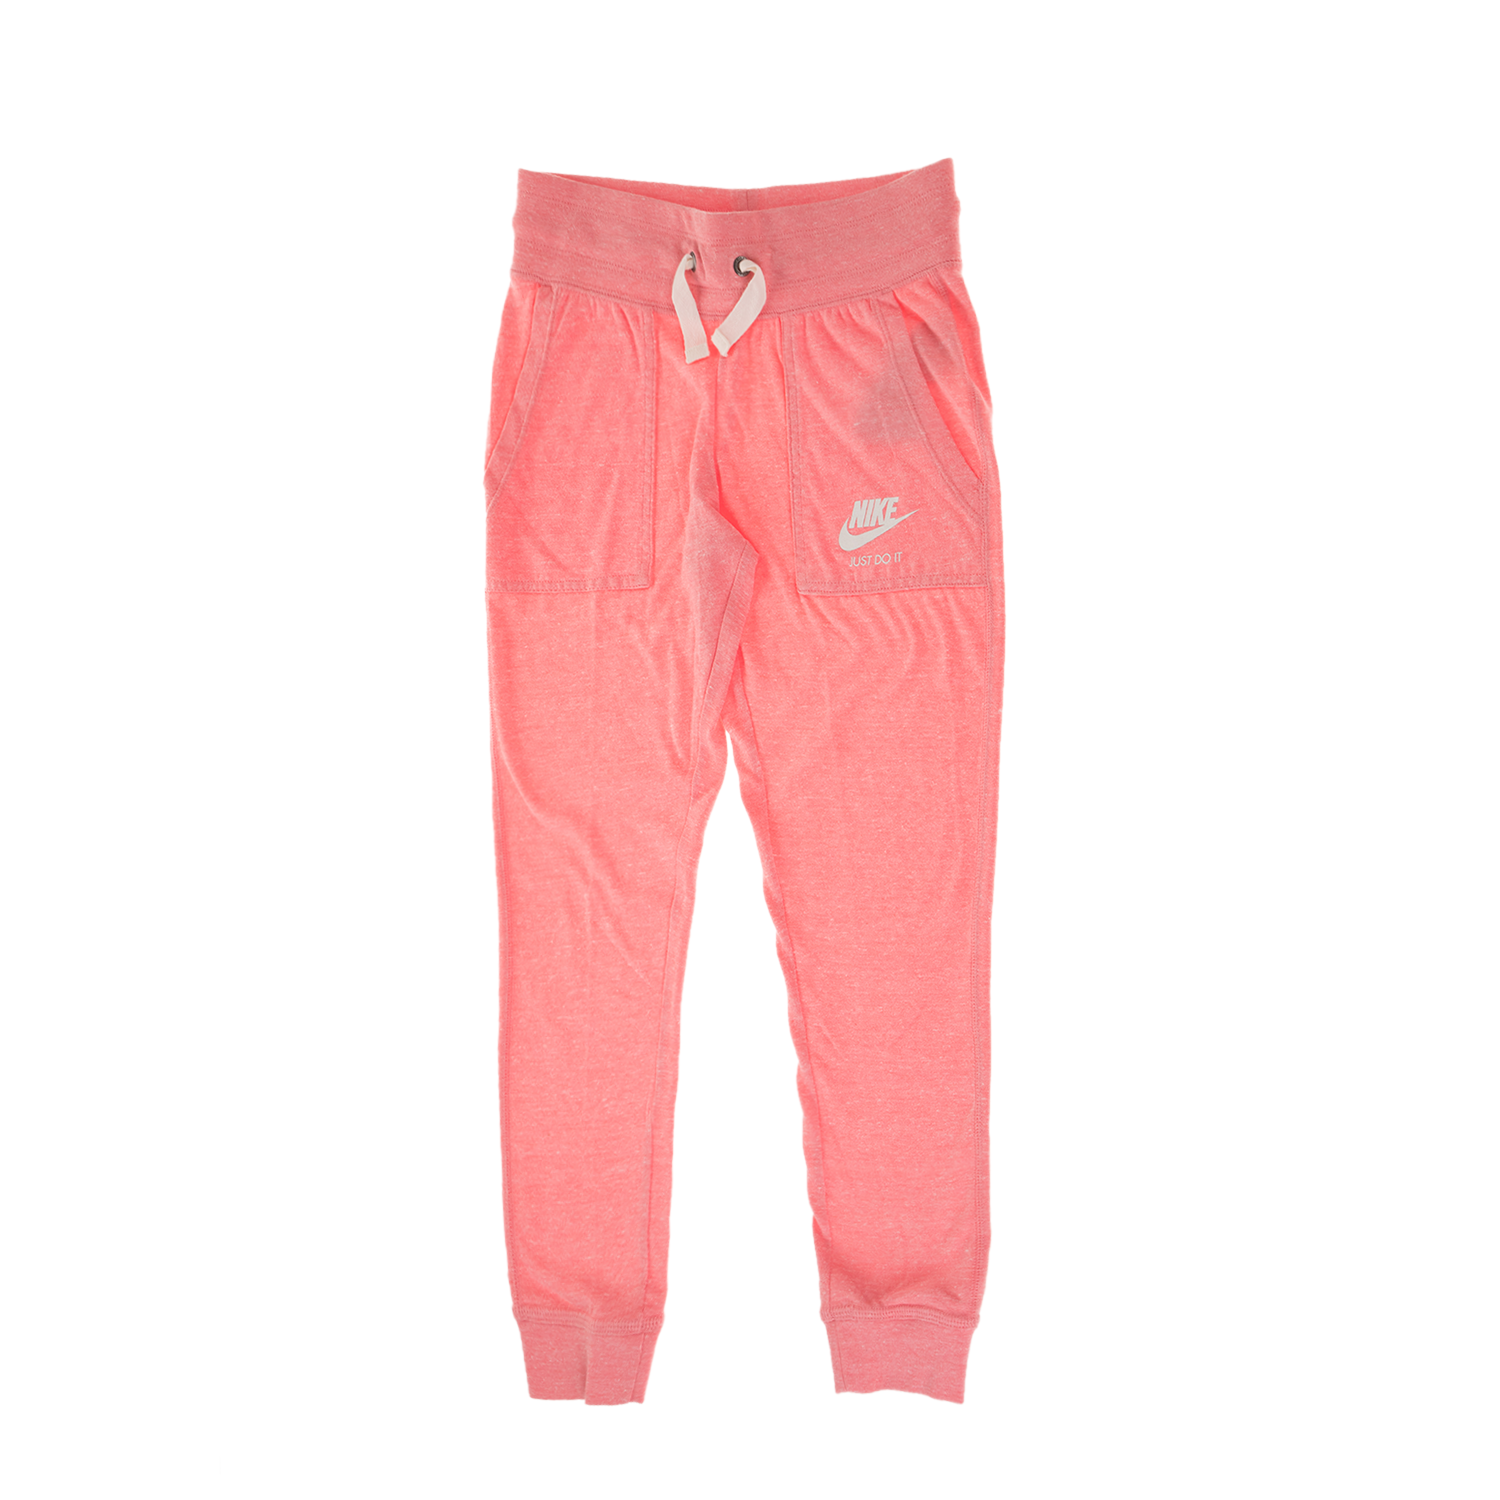 Παιδικά/Girls/Ρούχα/Αθλητικά NIKE - Παιδικό παντελόνι φόρμας NIKE NSW VNTG ροζ